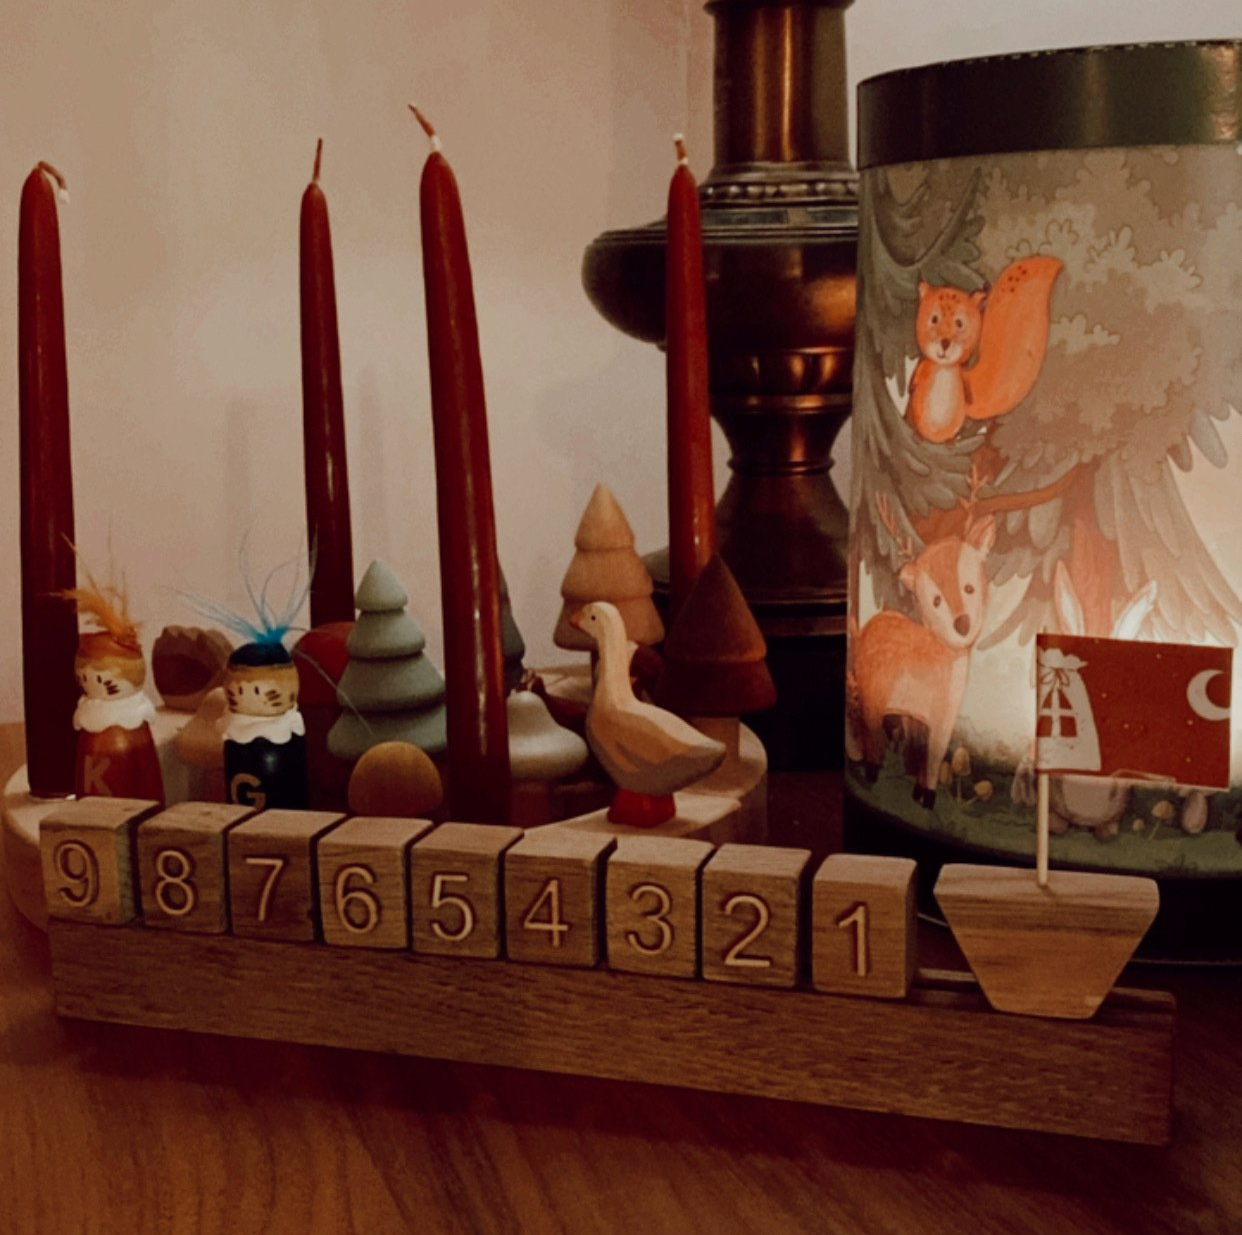 Maanenschijn - Aftelkalender - Elise van GoudvanHout - Tijd is voor kinderen soms nog een lastig begrip. Geef daarom je kind een beetje houvast in de drukke sinterklaasperiode met deze leuke houten aftelkalender!